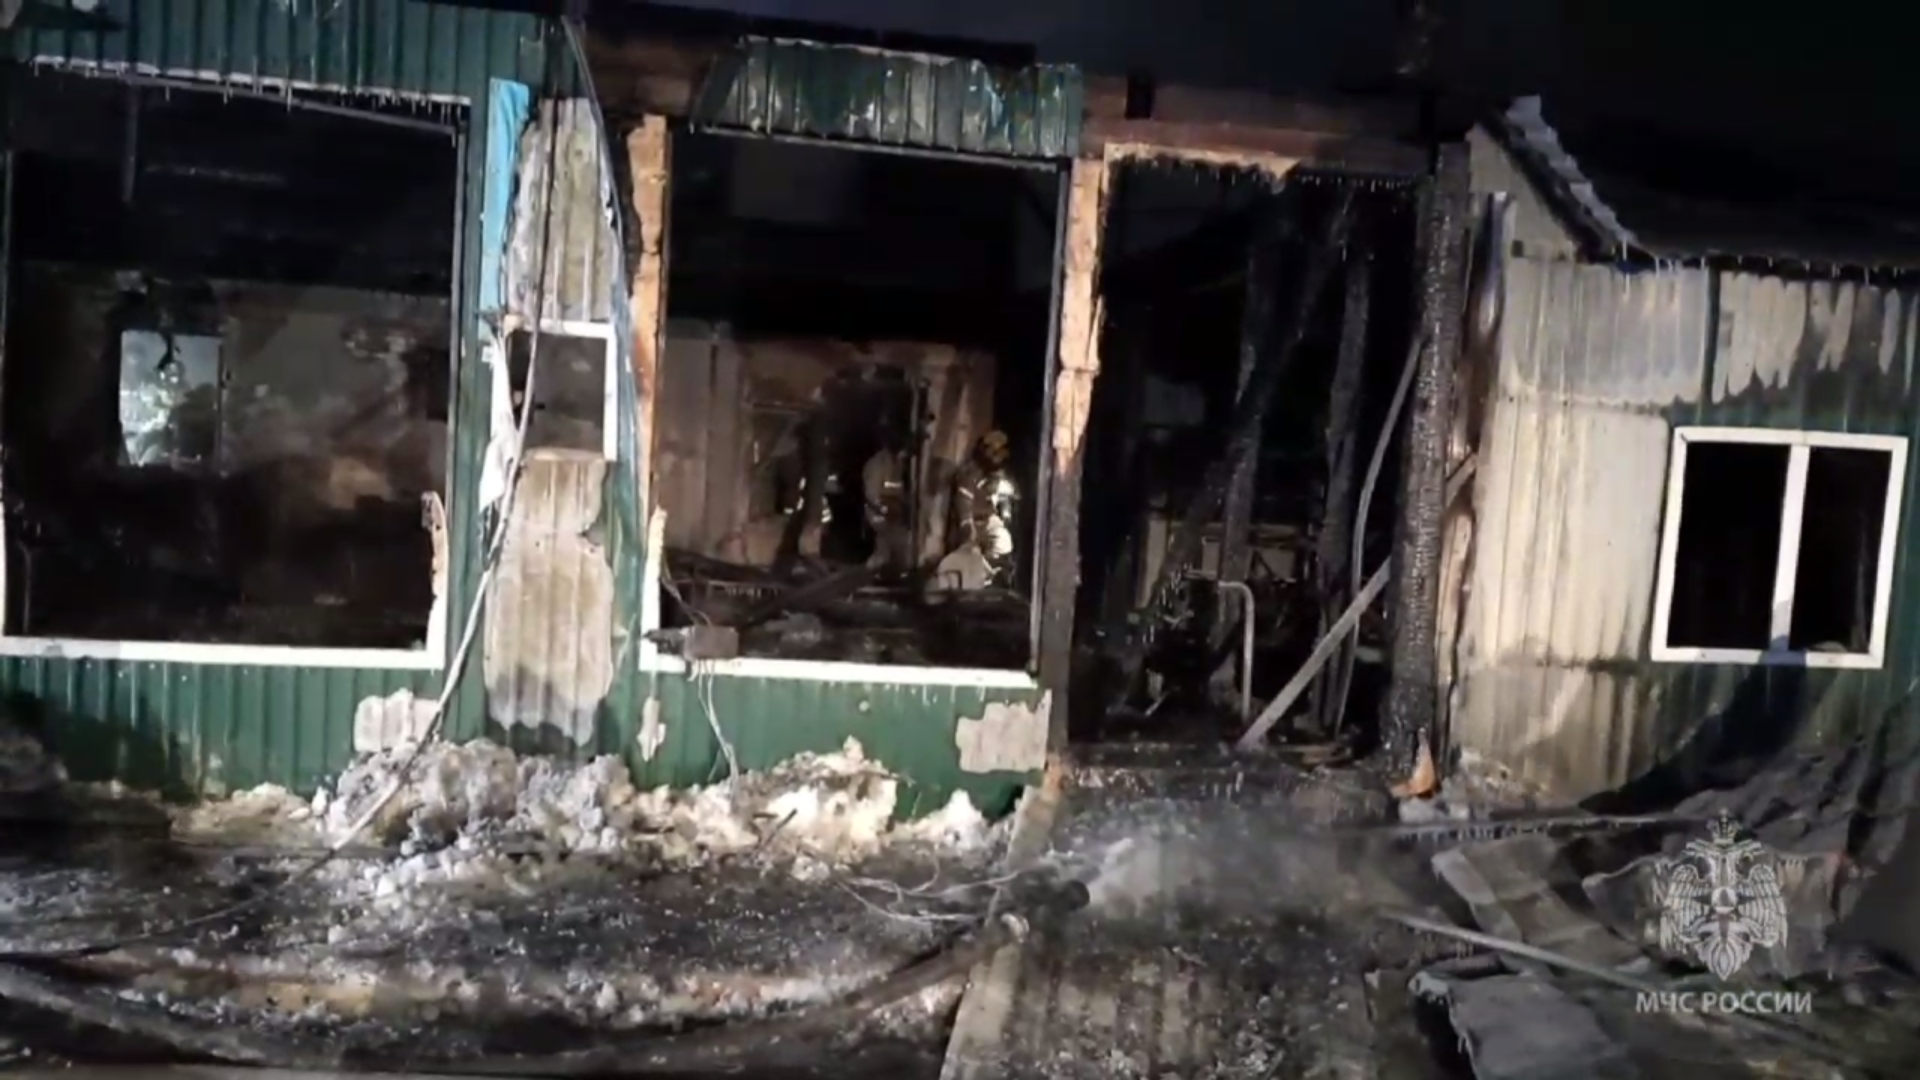 Ликвидация последствий пожара в доме престарелых в Кемерове. Скриншот из видео МЧС России.